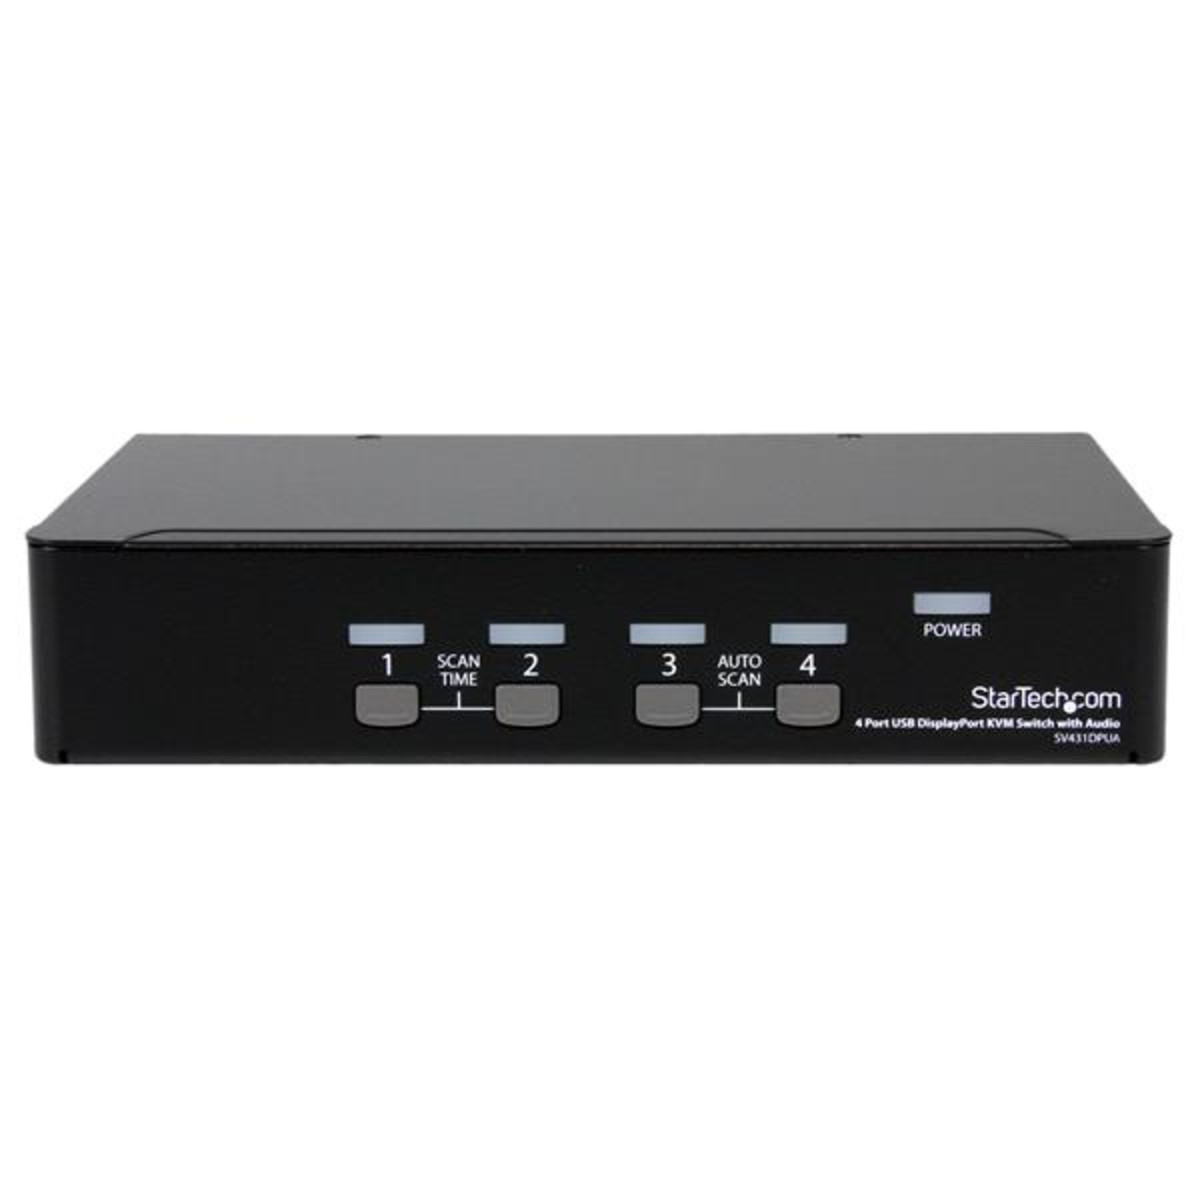 4 Port USB DisplayPort KVM Switch